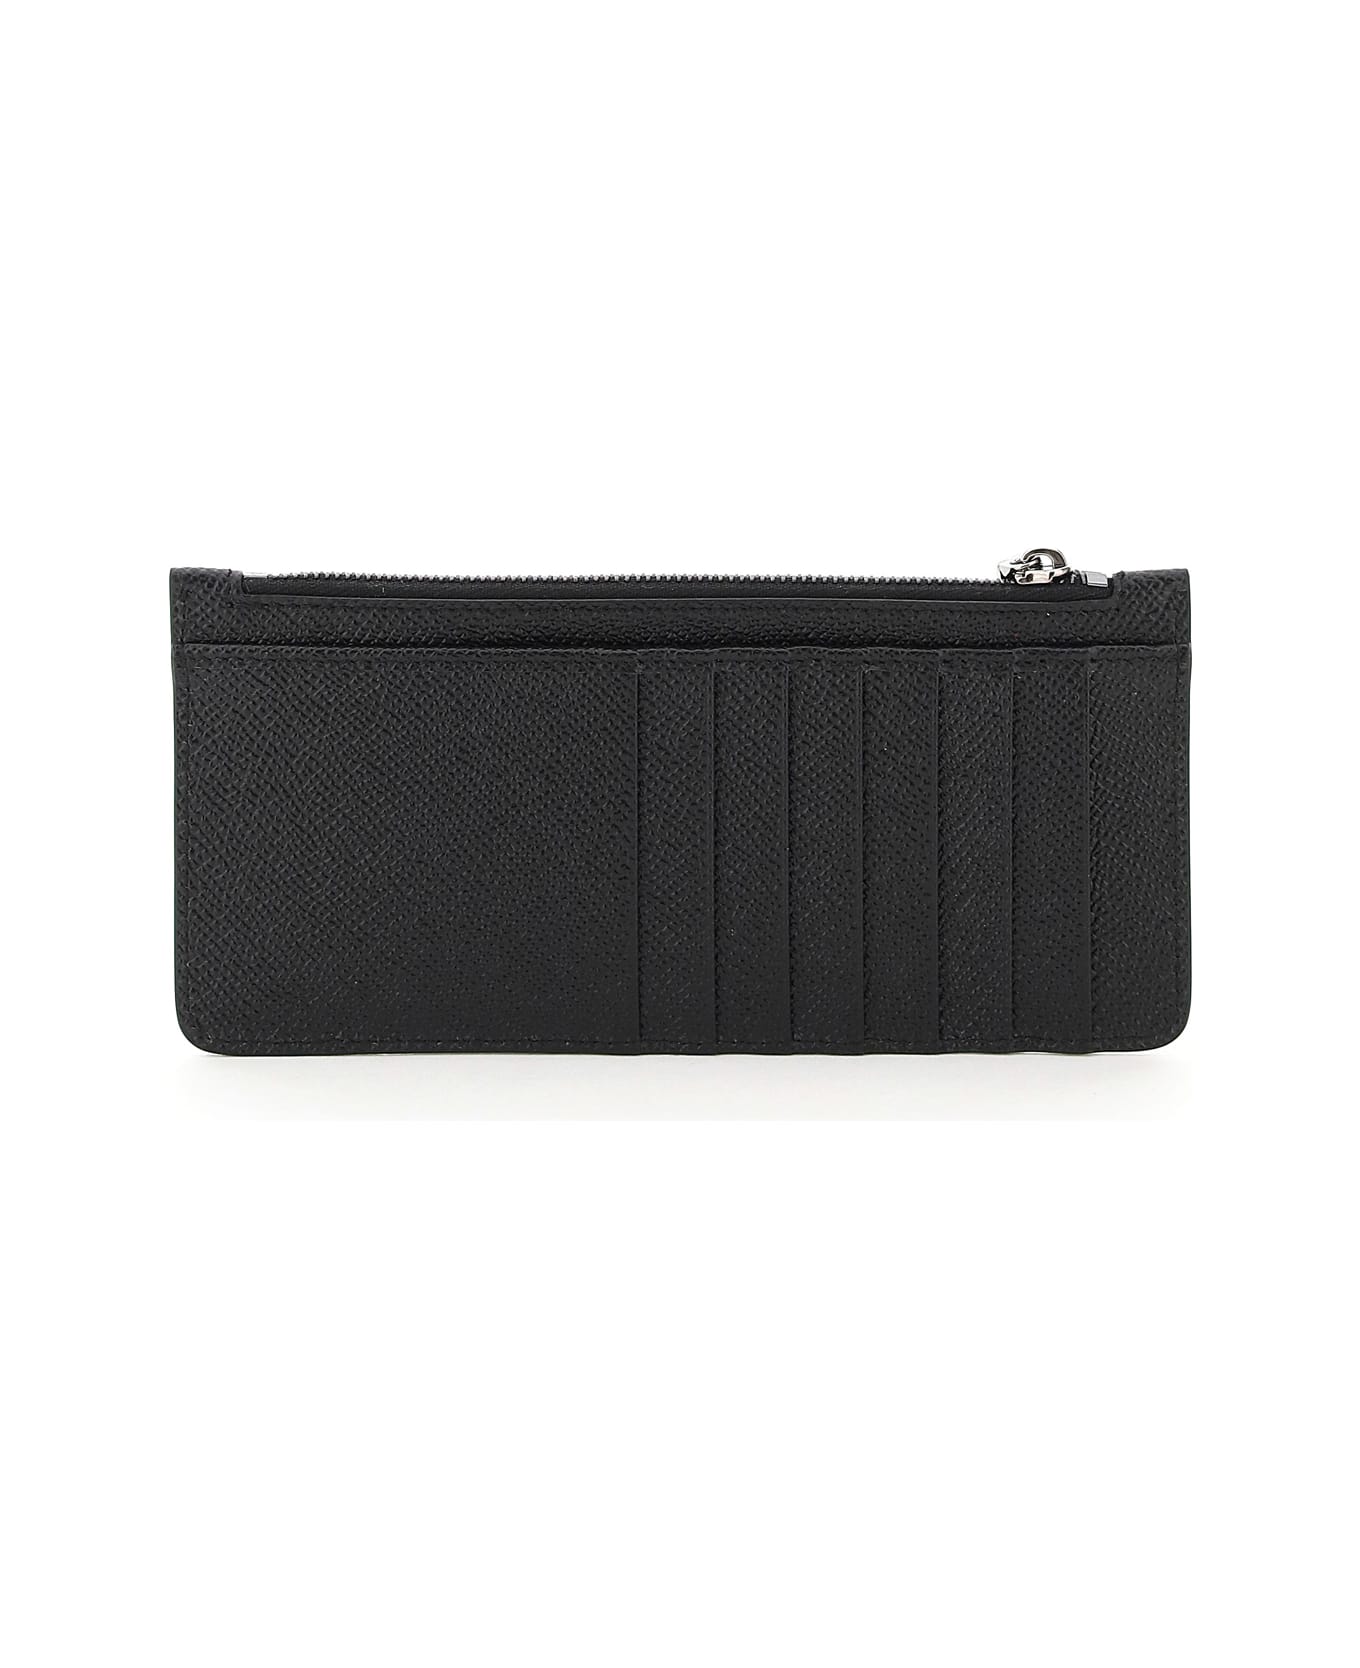 Dolce & Gabbana Credit Card Holder - BLACK (Black)